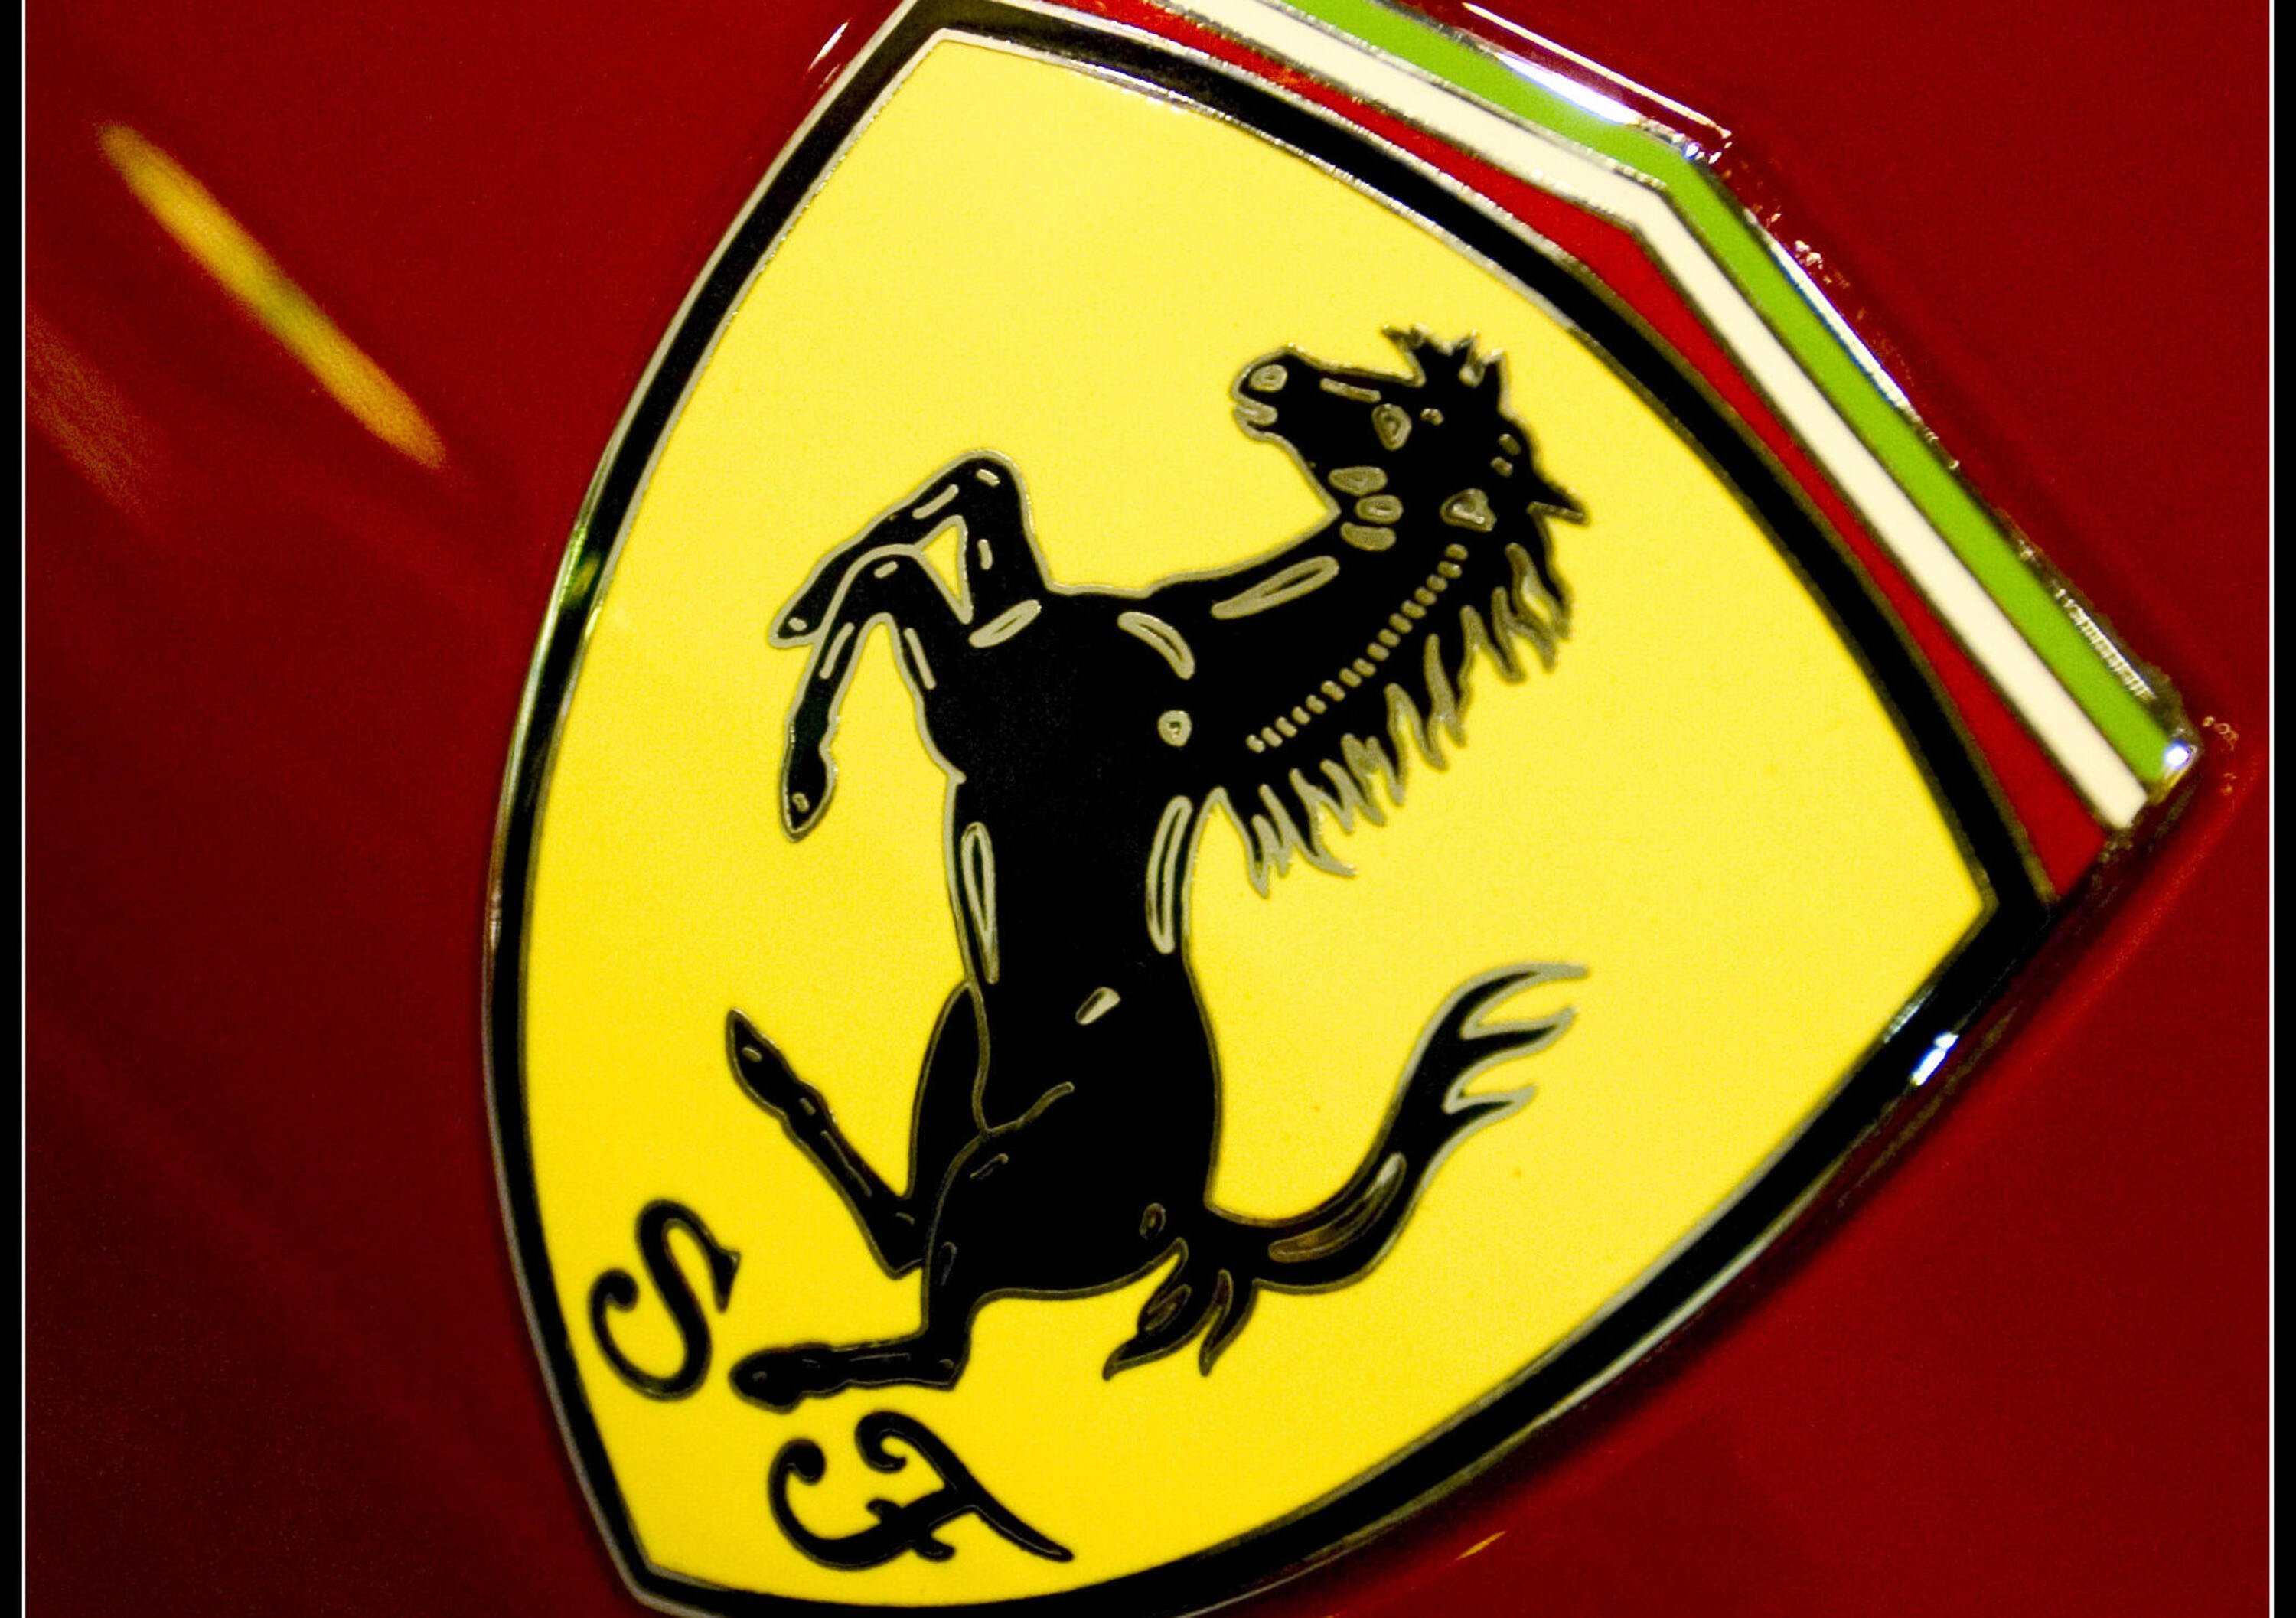 Ferrari chiude il 2011 con risultati record